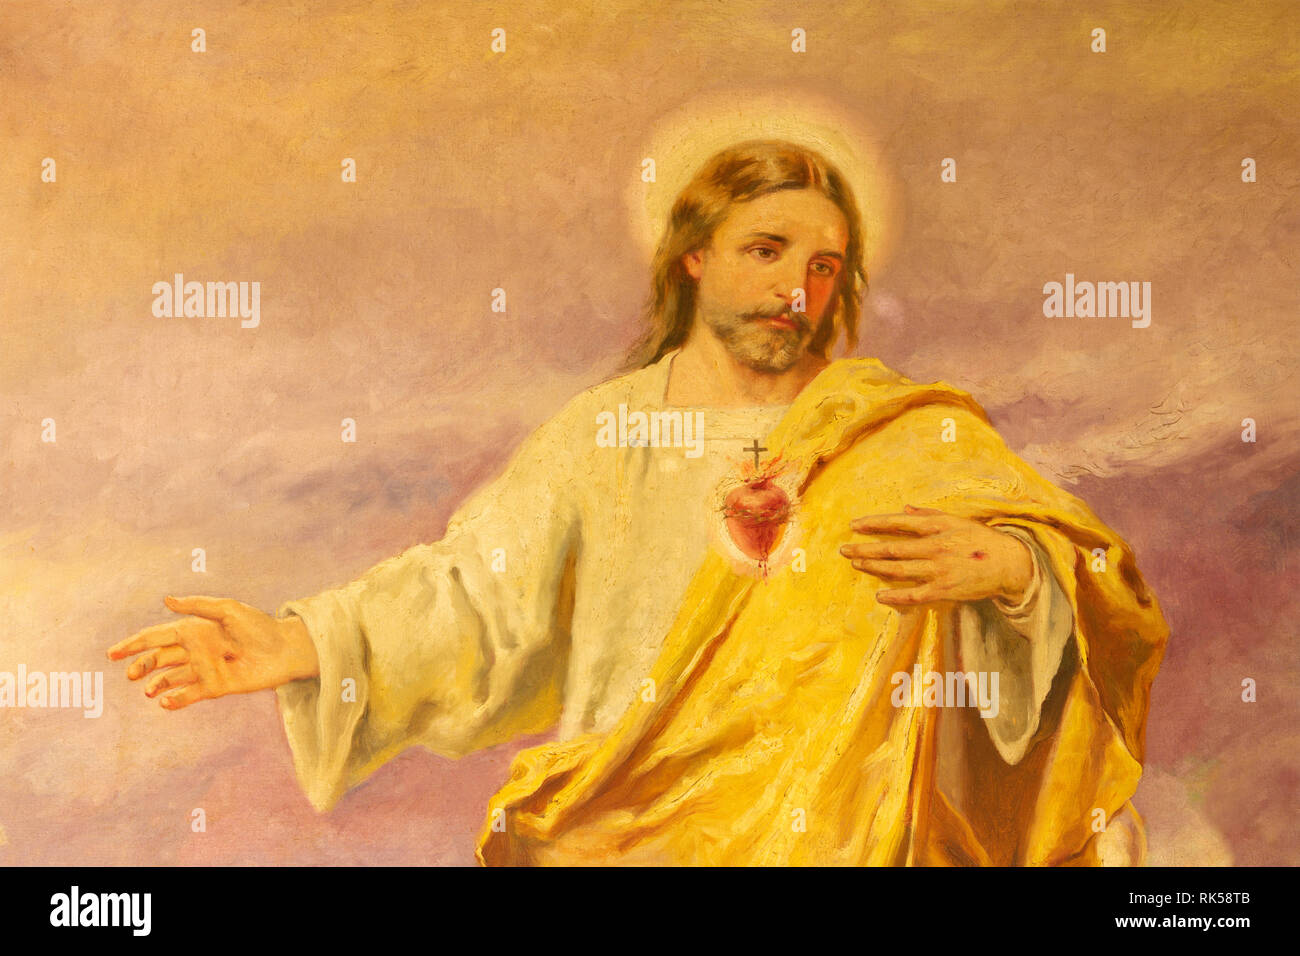 PALMA DE MALLORCA, Spagna - 29 gennaio 2019: la pittura del Cuore di Gesù nella chiesa Iglesia de Santa Teresa de Jesus. Foto Stock